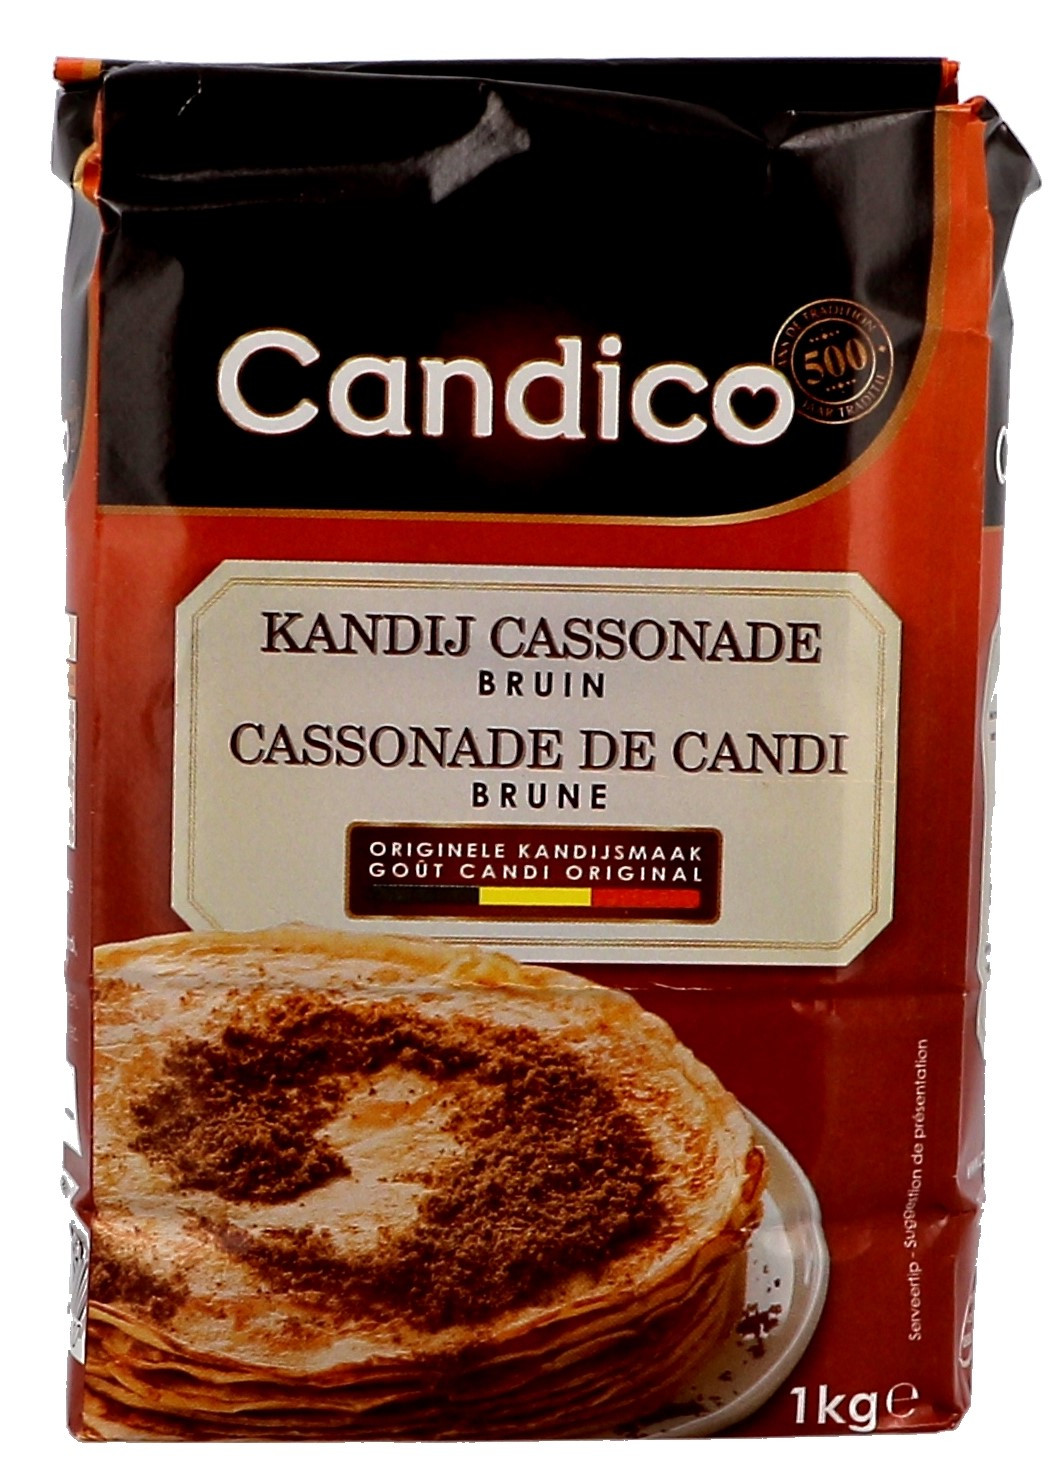 Candico Cassonade de candi brune foncé 1kg (Suiker)